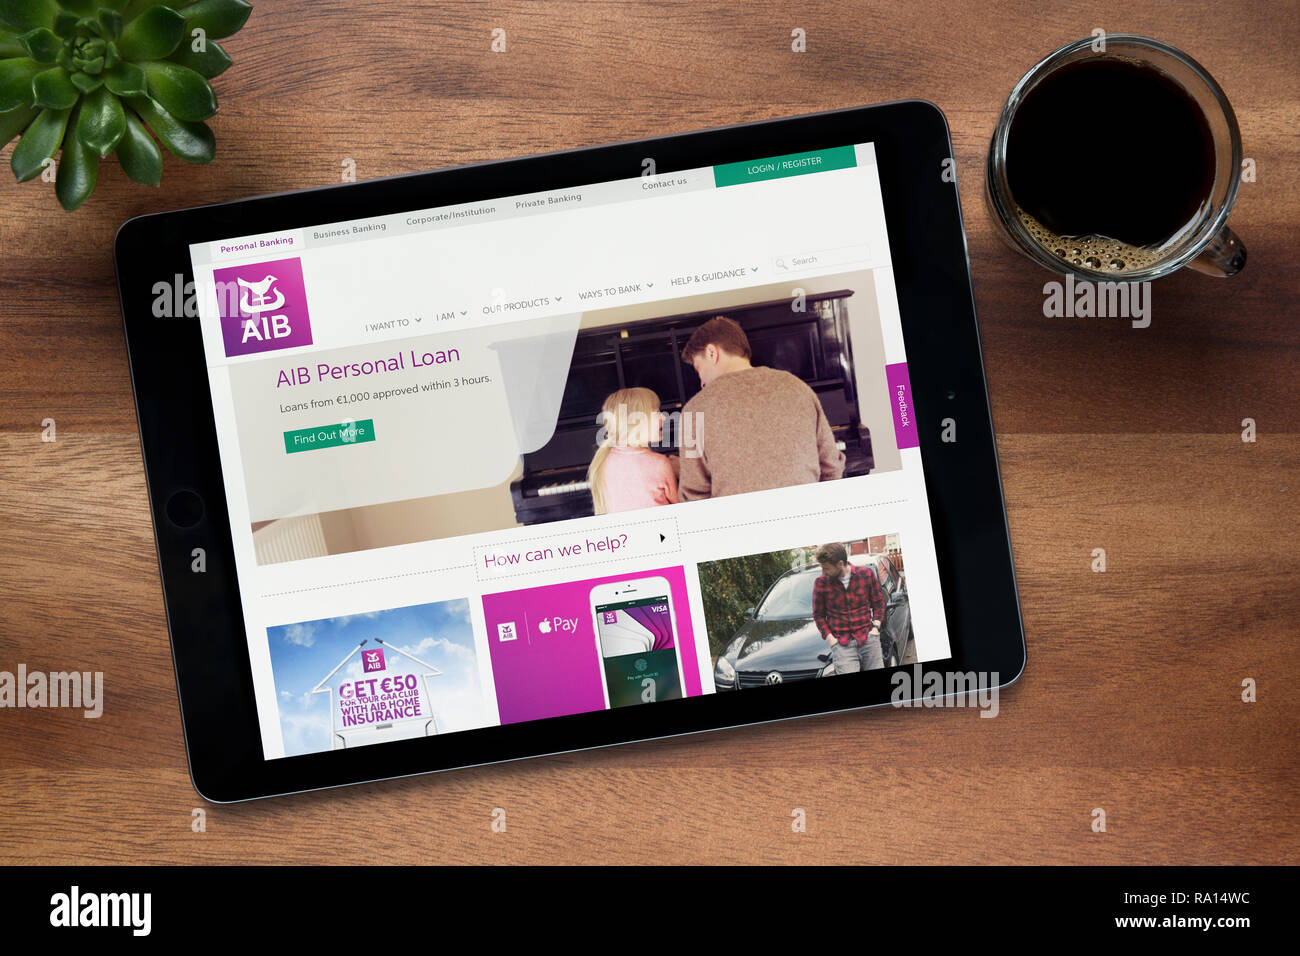 Le site internet de l'AIB (Allied Irish Banks) est vu sur un iPad tablet, sur une table en bois (usage éditorial uniquement). Banque D'Images